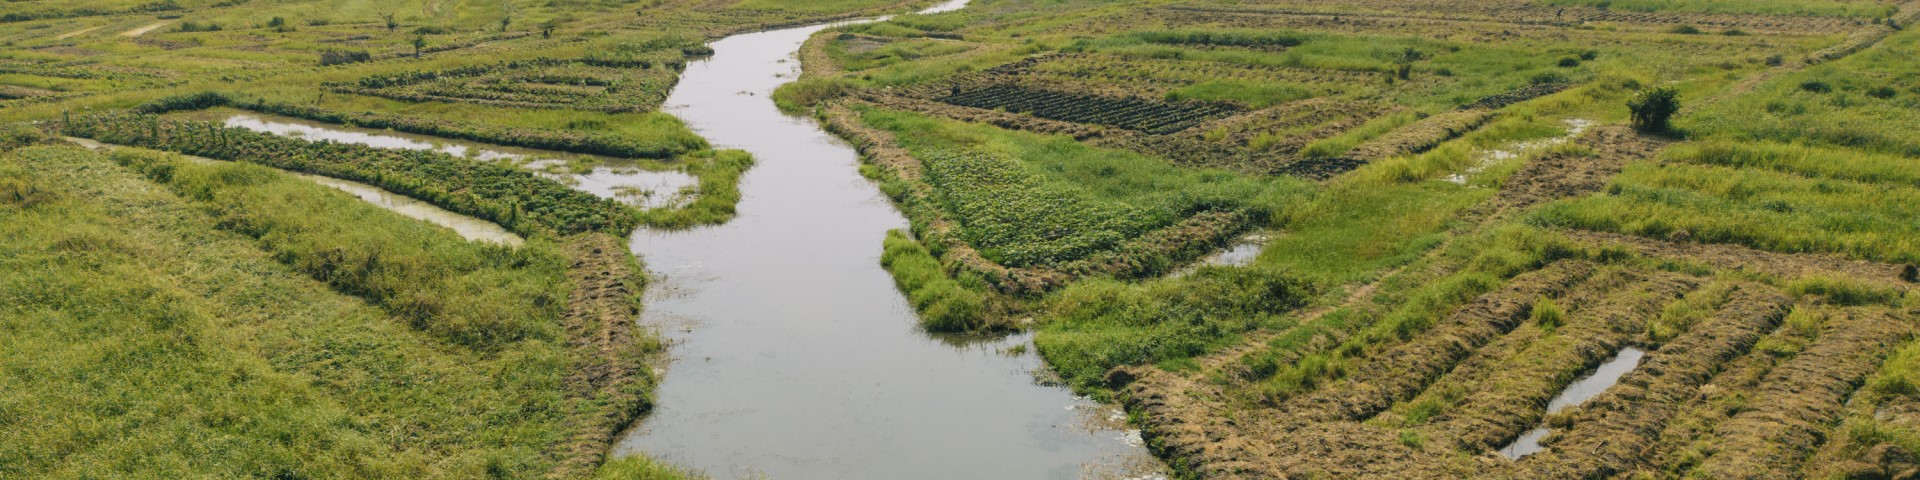 Der Hondji-Bembê-Kanal schlängelt sich durch die Landschaft. 